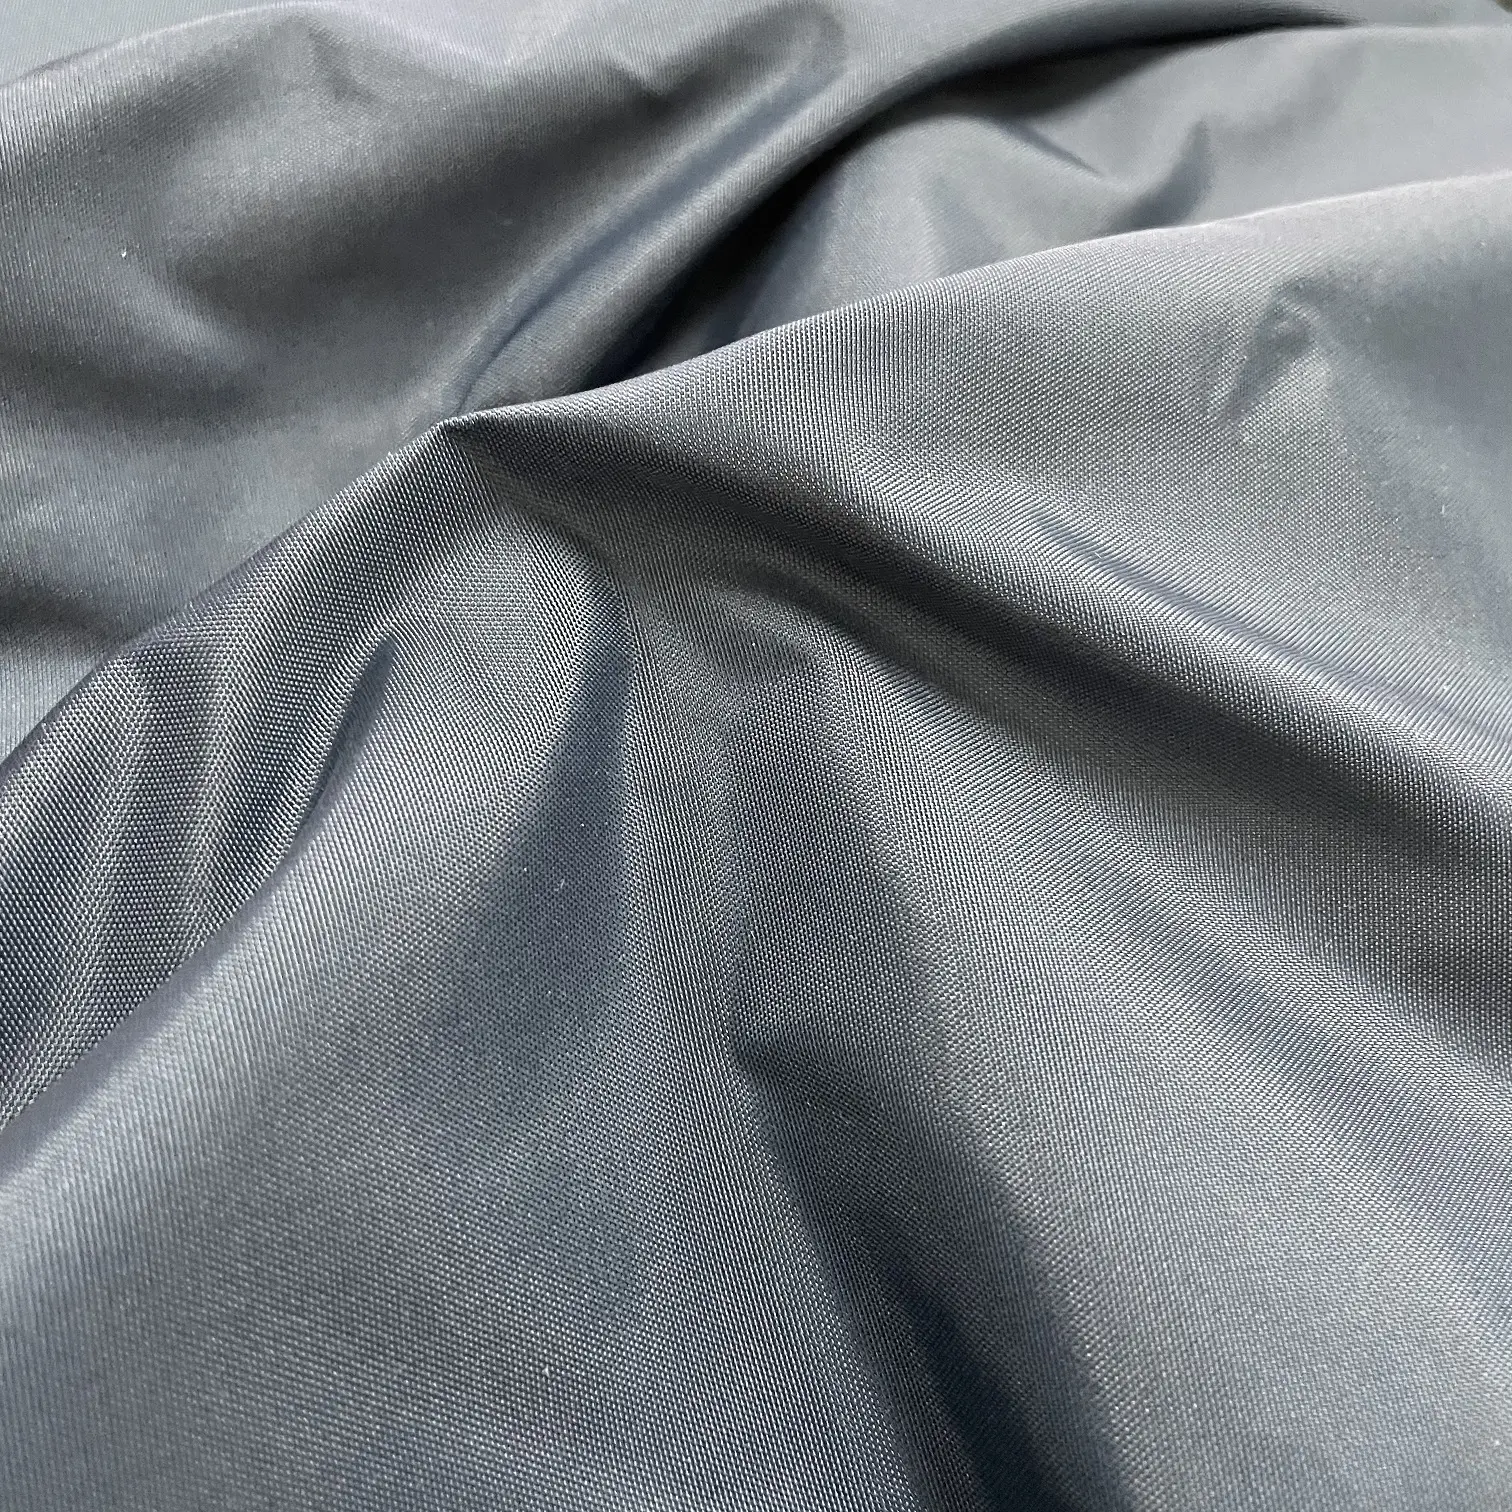 100% Oxford Nylon impermeable laminado recubierto de tela a prueba de viento para Funda de colchón al aire libre